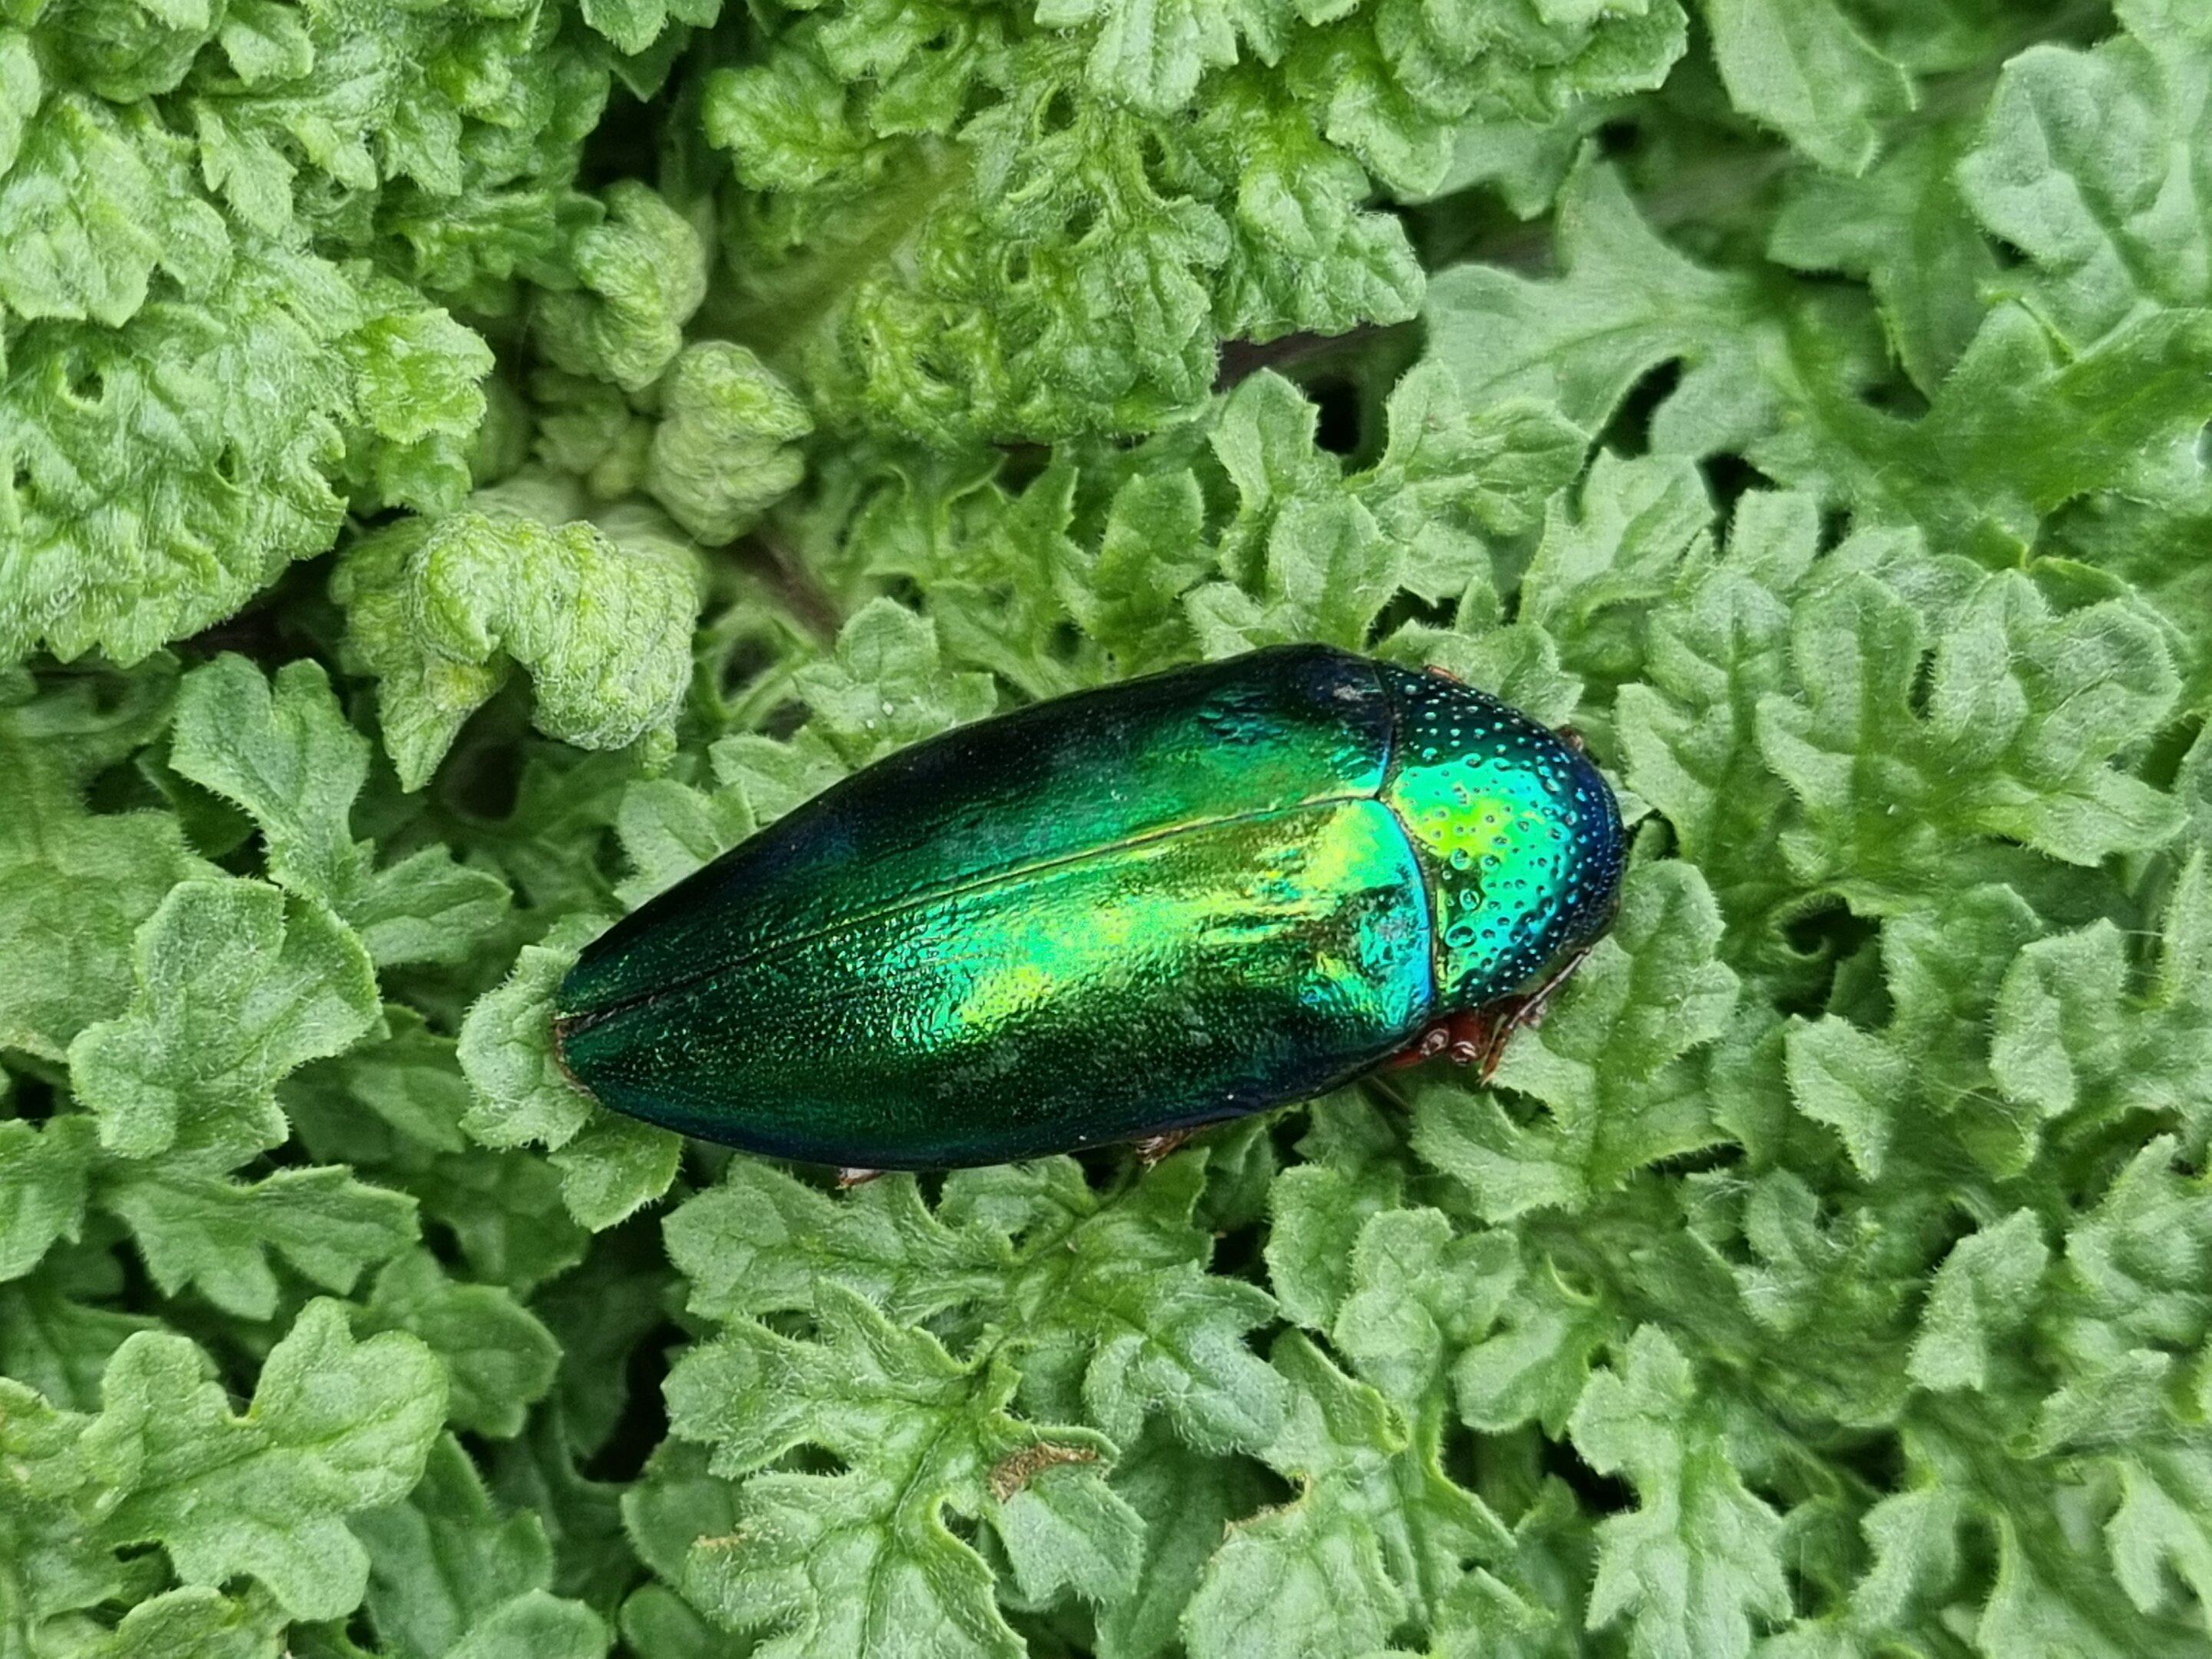 La iridiscencia del escarabajo es una forma engañosa de coloración de alerta, según un estudio